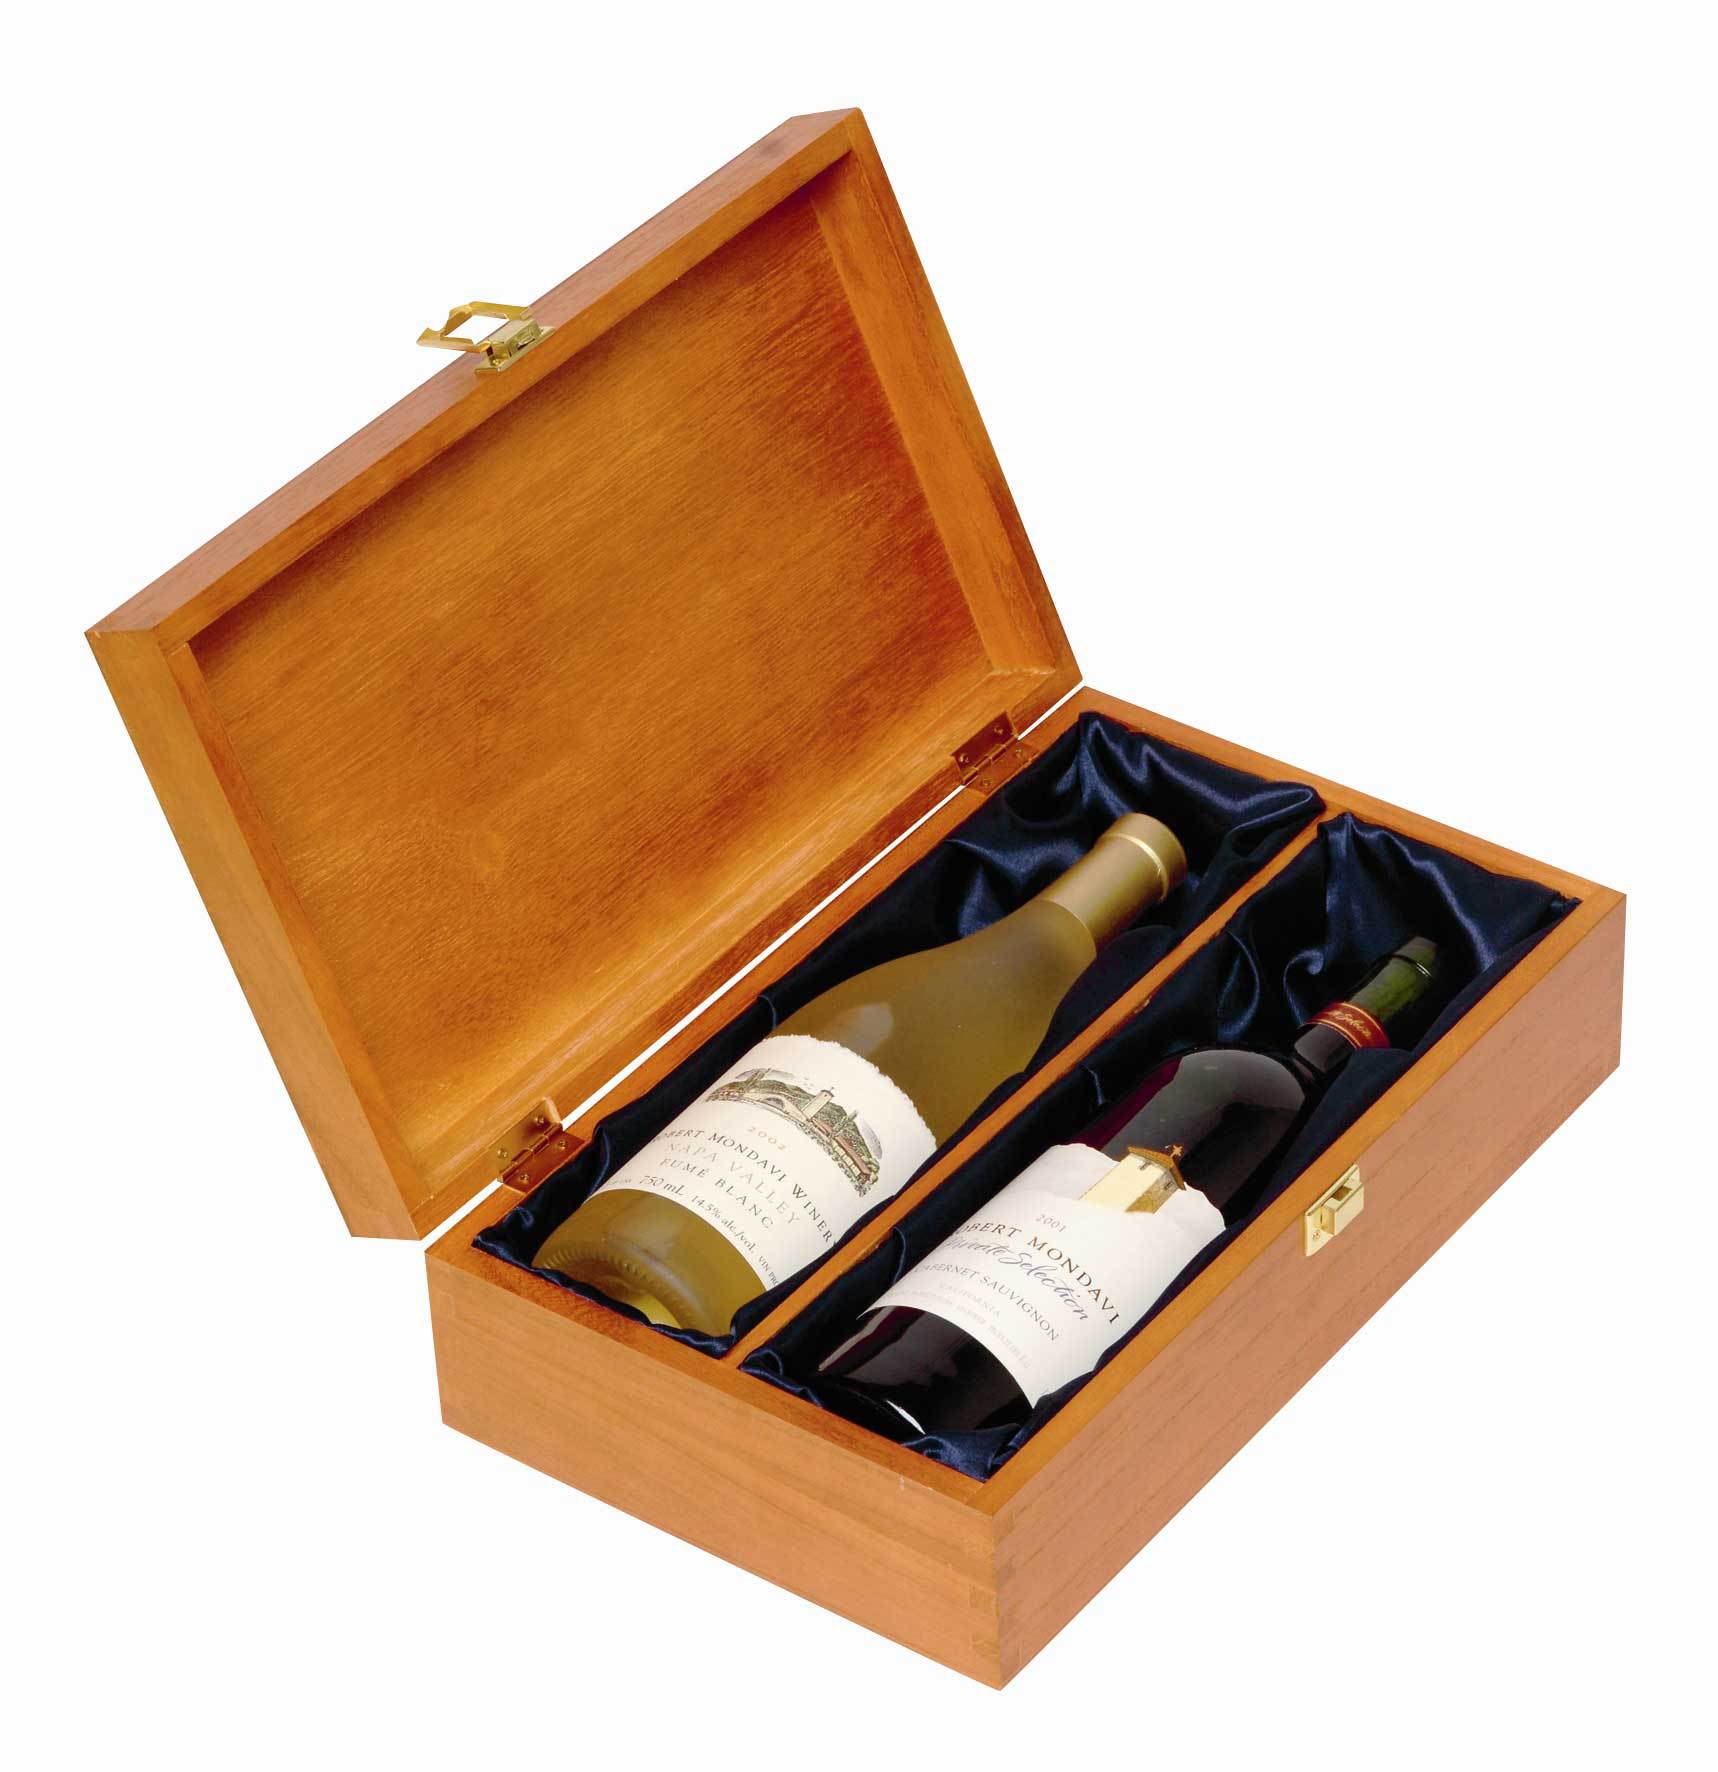 厂家爆款双支红酒木盒定货ing 木质红酒包装盒 最佳送礼葡萄酒盒